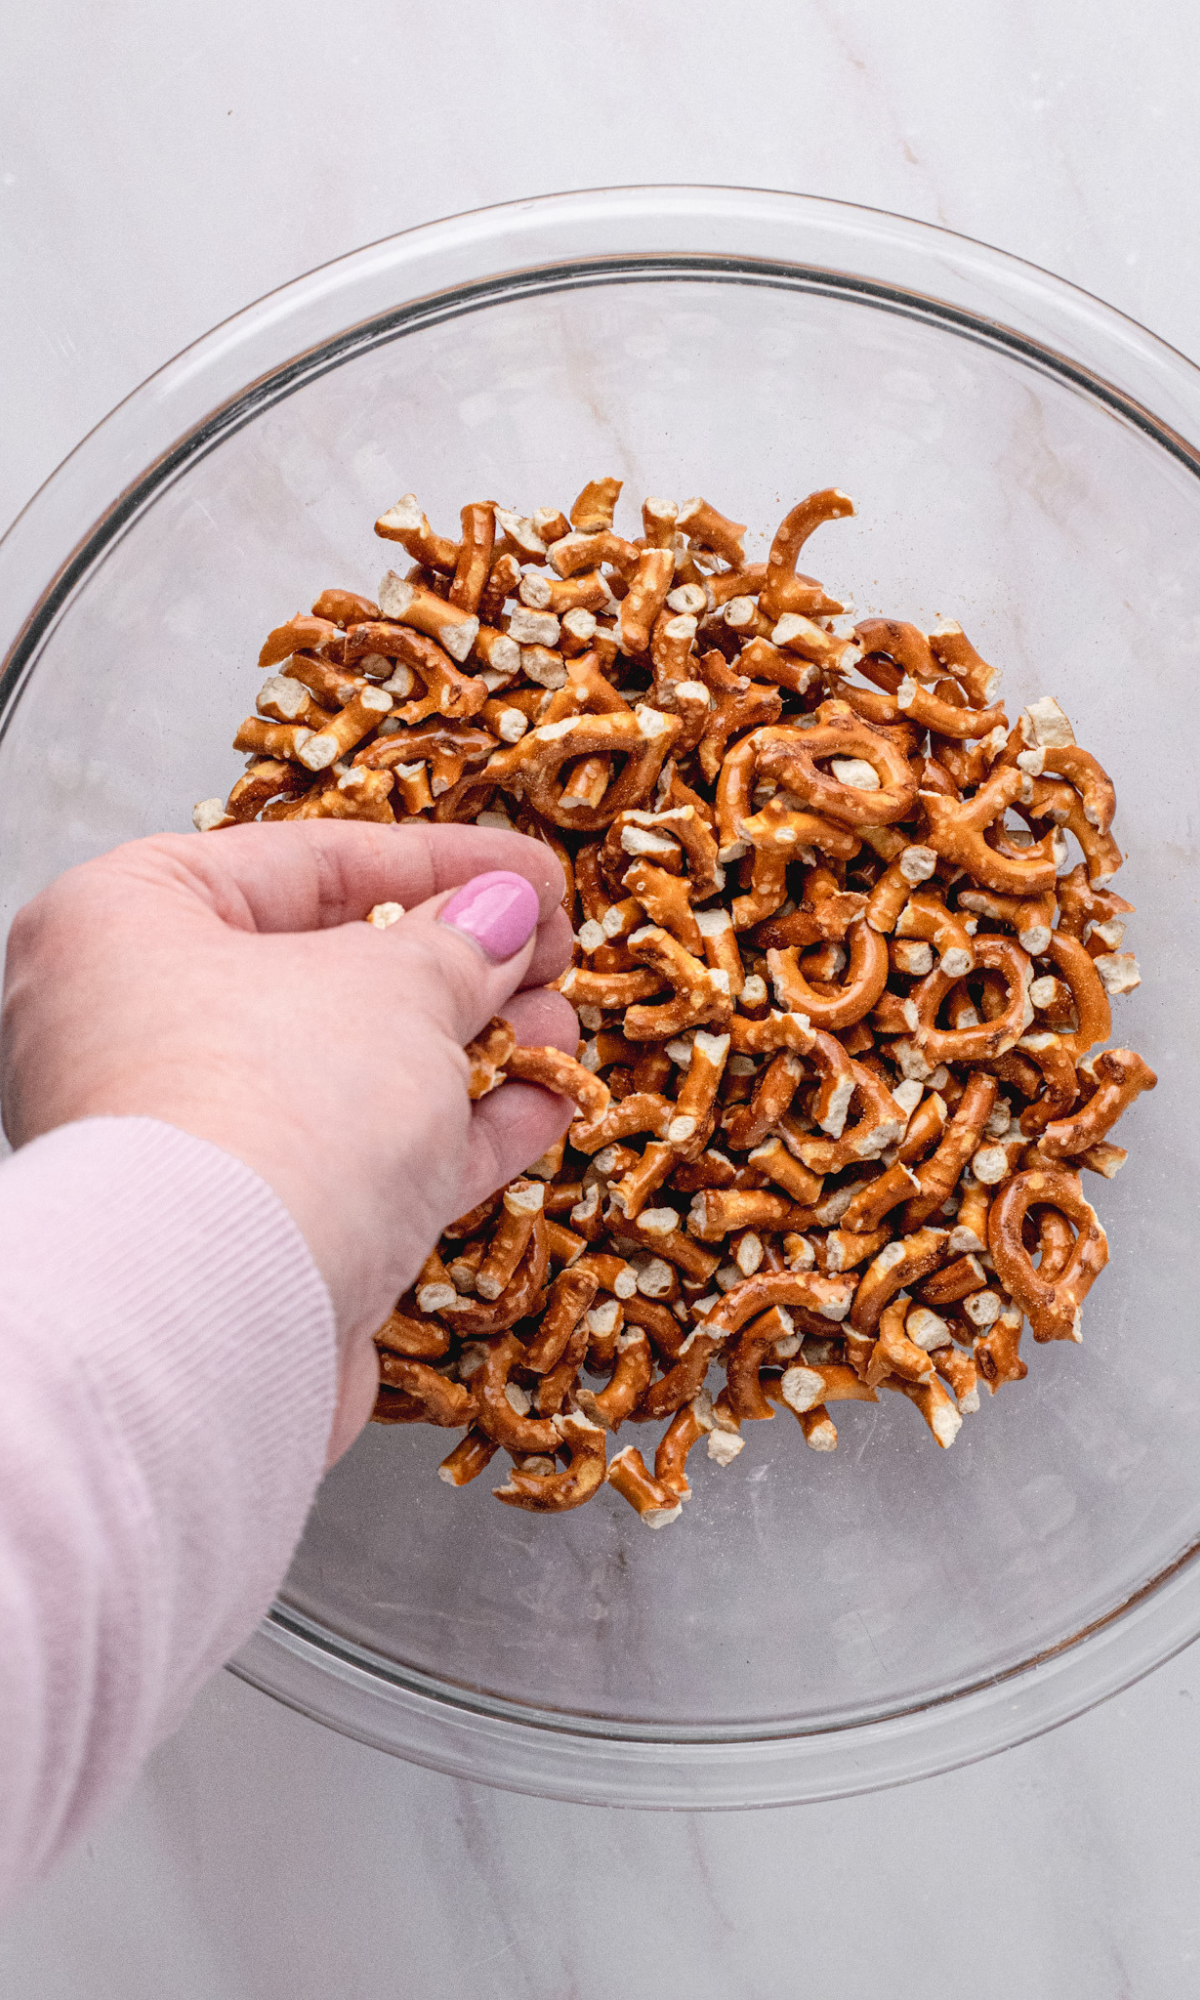 A bowl of broken up pretzels.